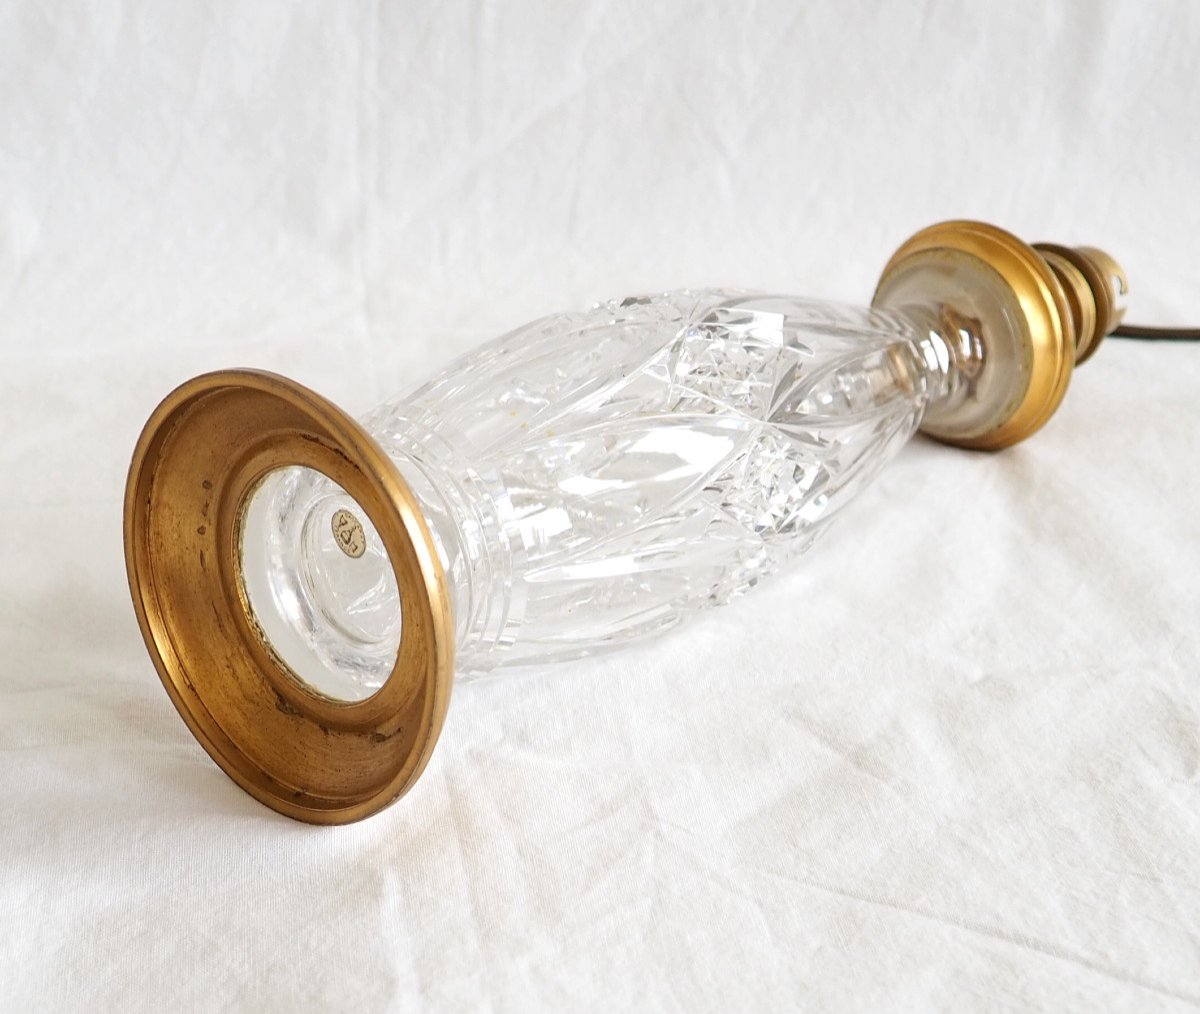 Baccarat - Pied De Lampe En Cristal Et Bronze Doré - étiquette Papier-photo-3